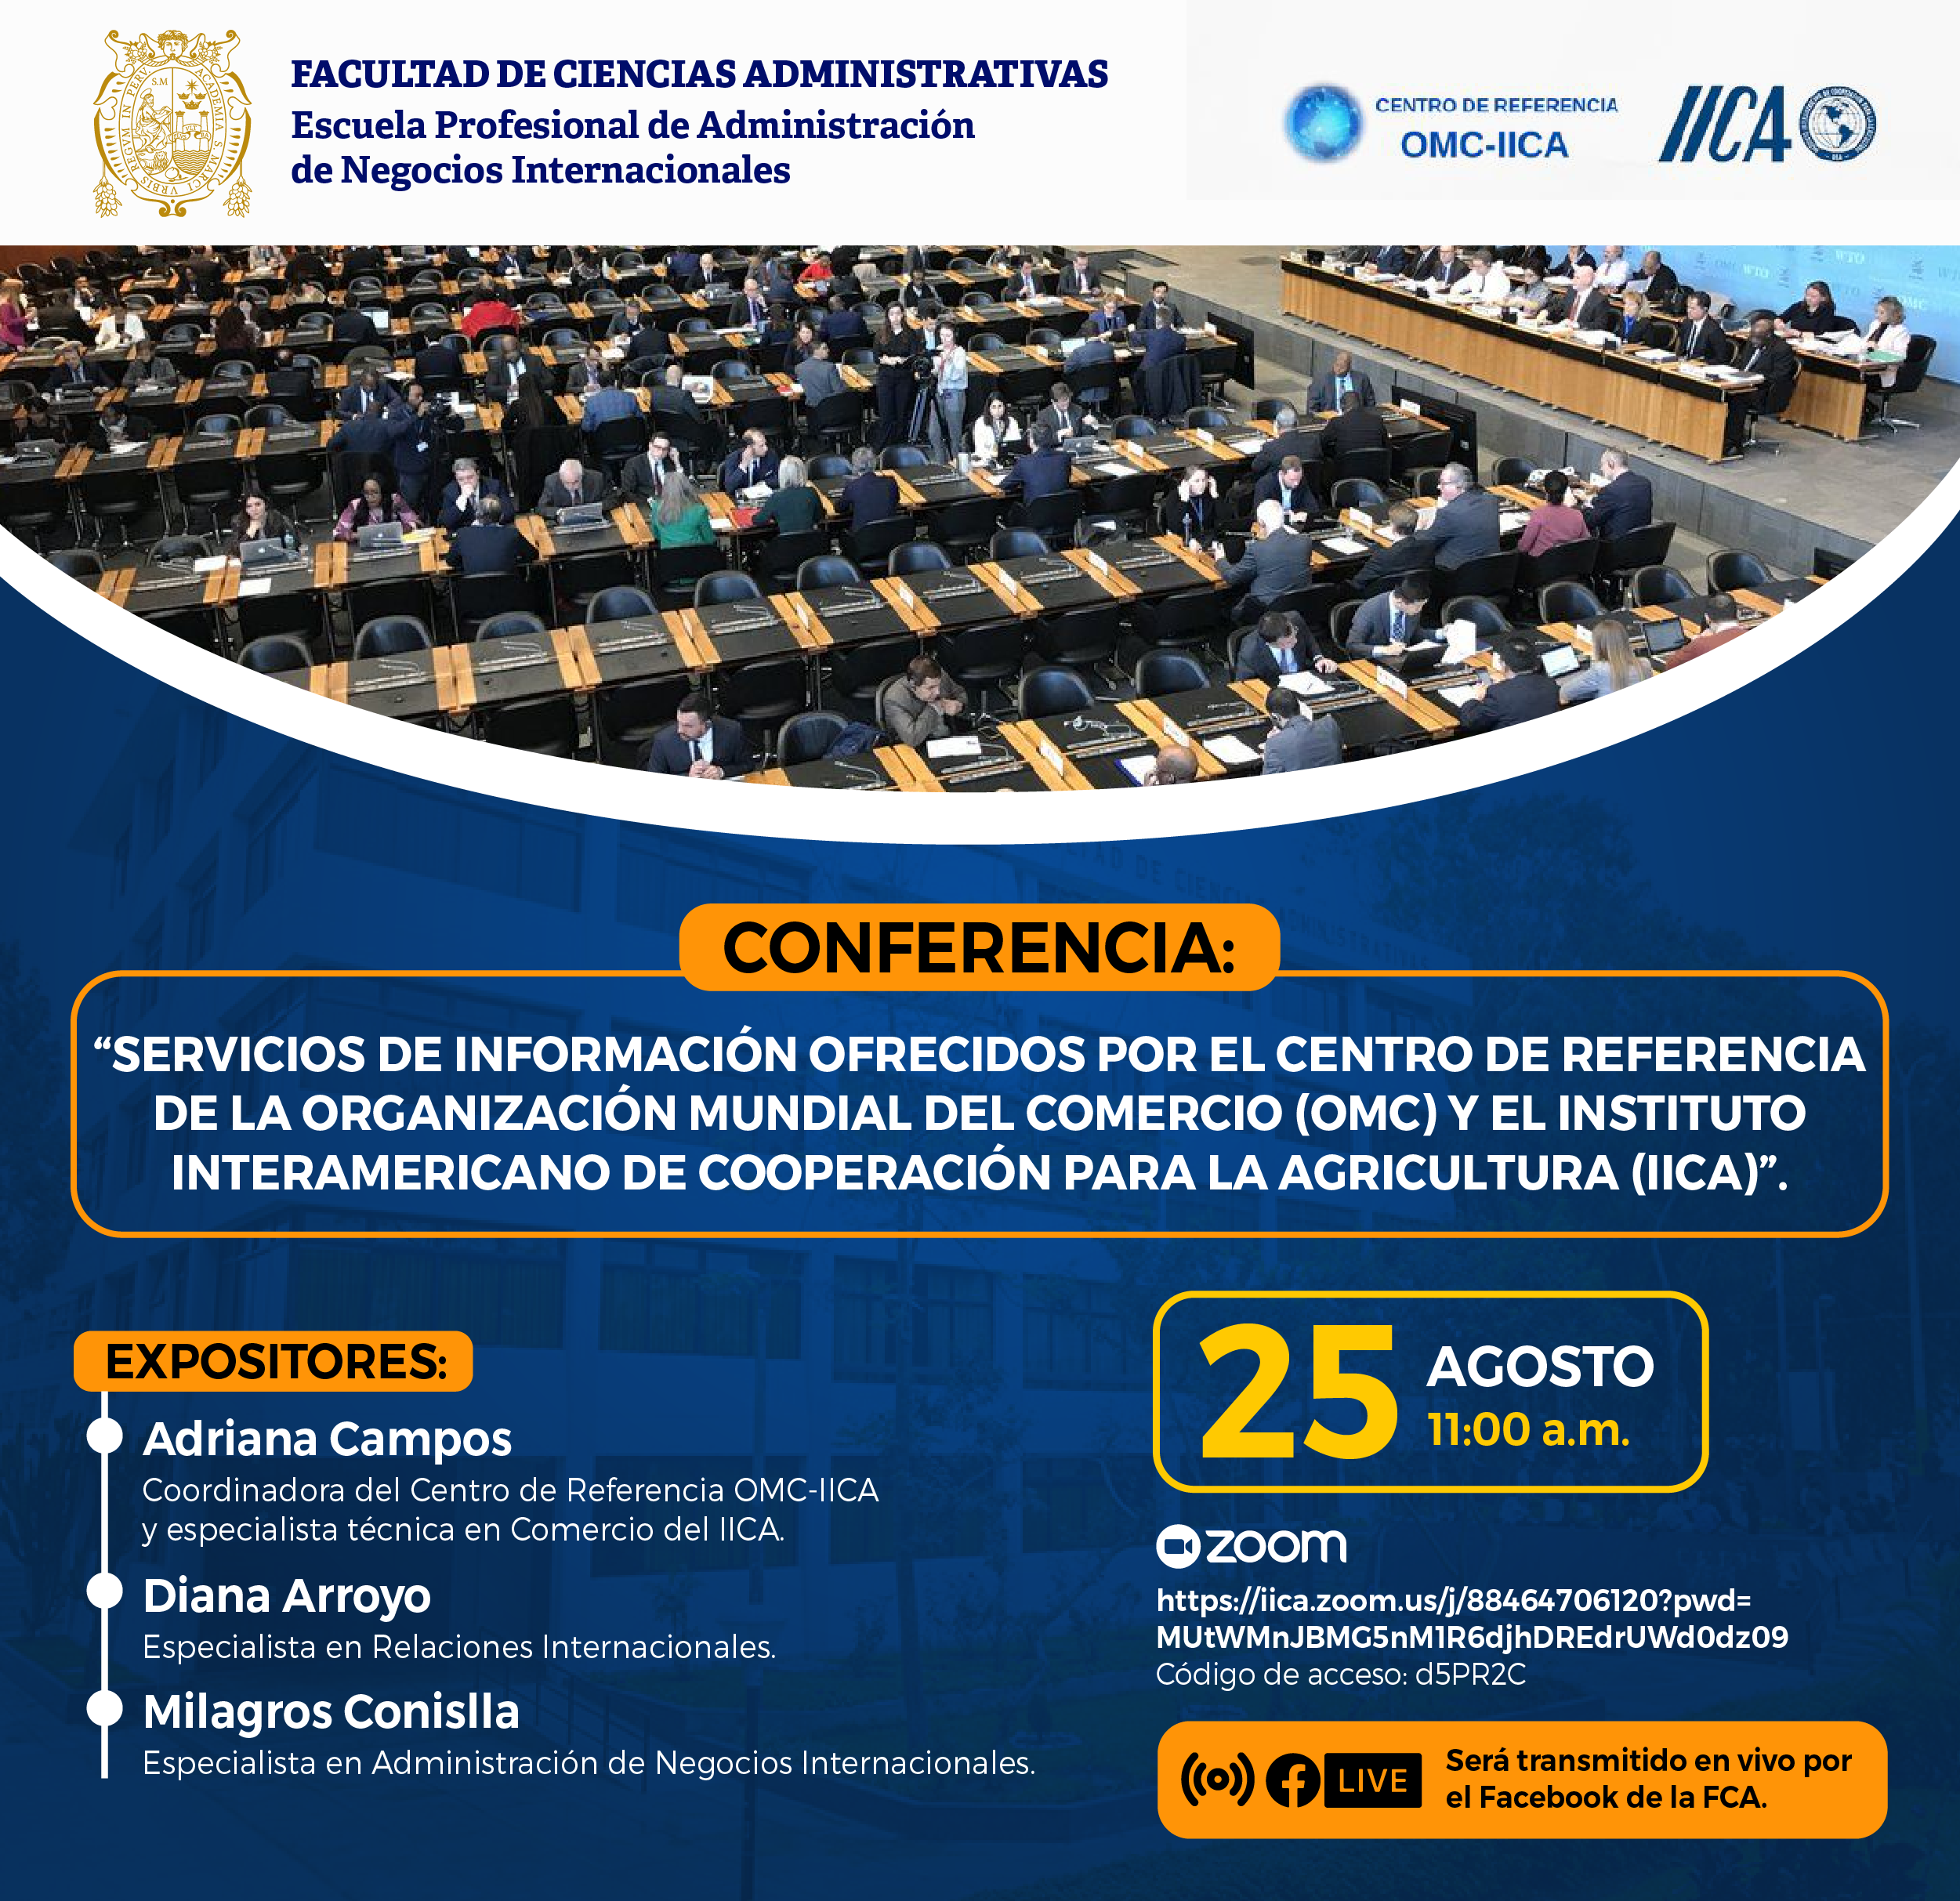 Conferencia: “Servicios de información ofrecidos por el Centro de Referencia de la Organización Mundial del Comercio y el Instituto Interamericano de Cooperación para la Agricultura”.